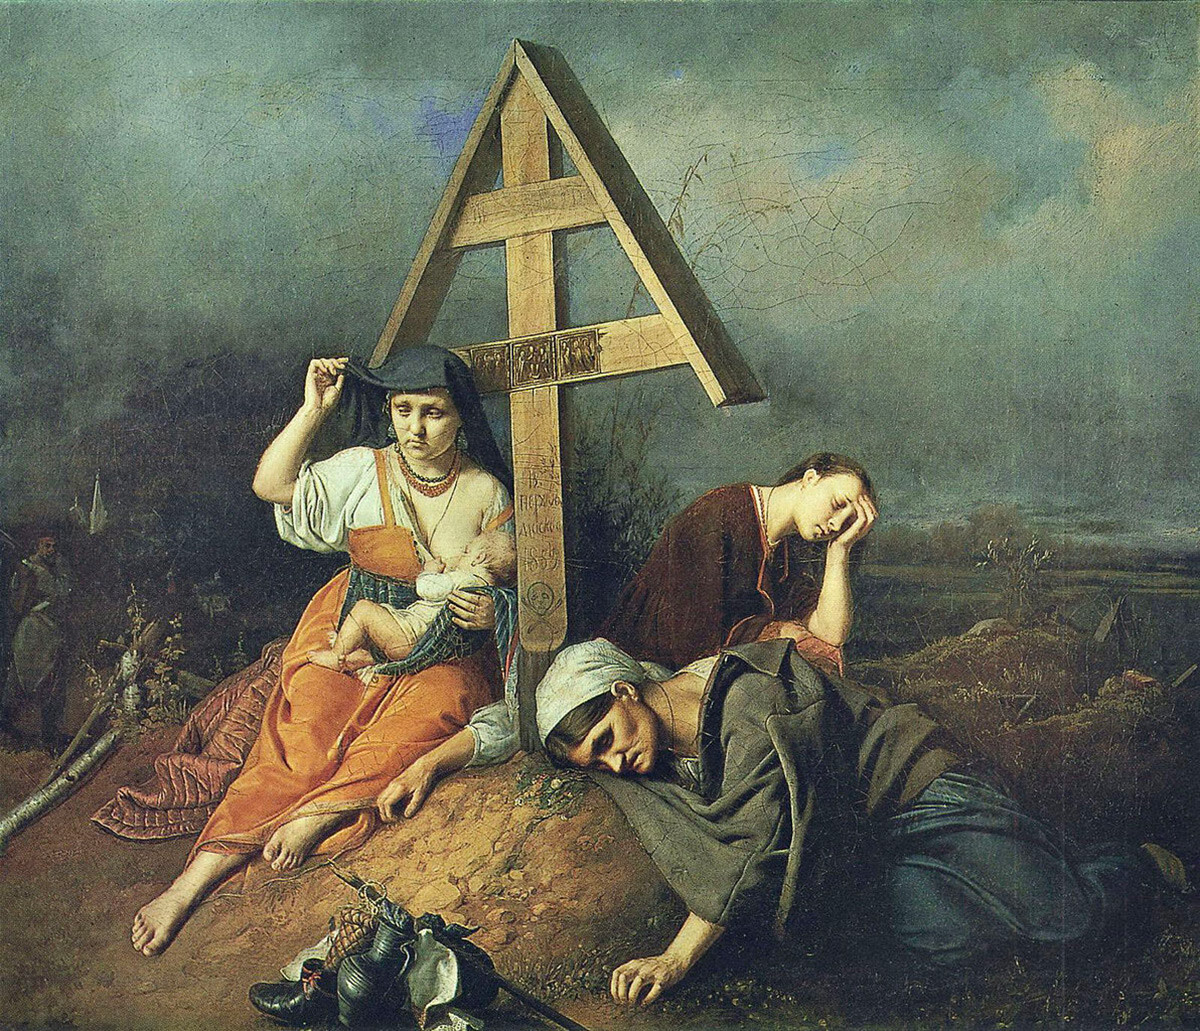 ヴァシーリー・ペロフ「墓の上のシーン」、1859年